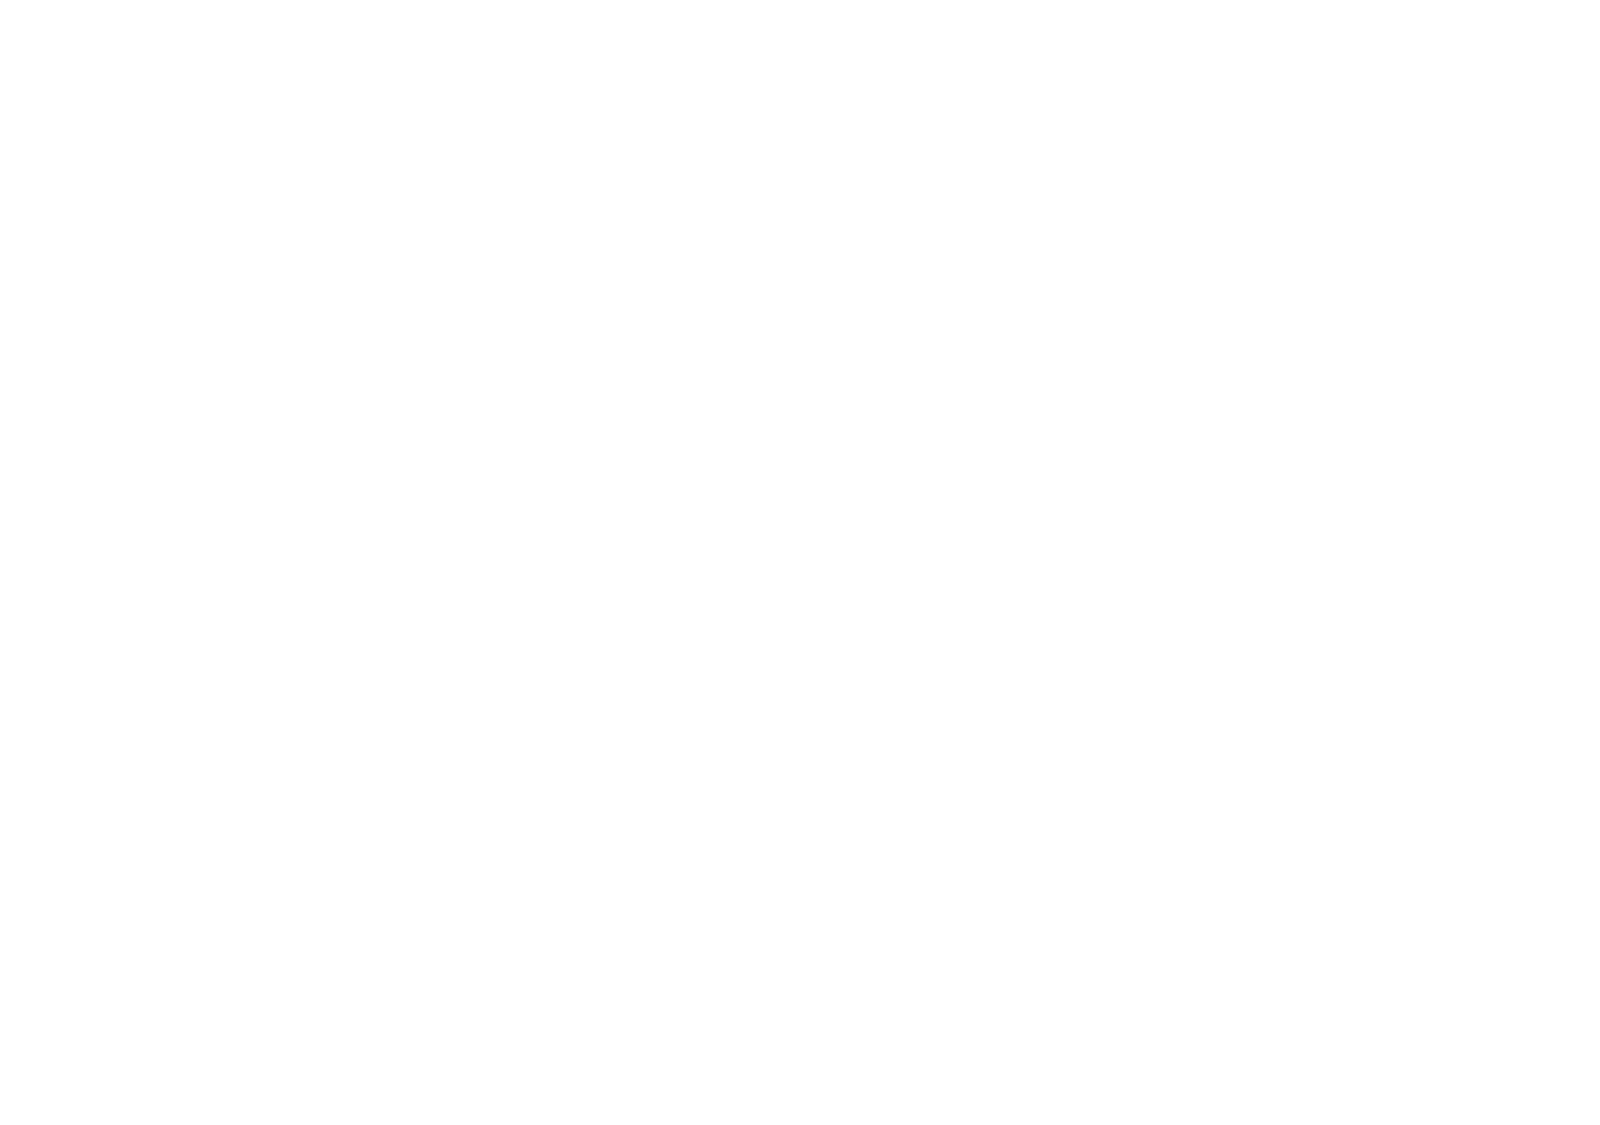 ベリーグッドマン、TVアニメ「新幹線変形ロボ シンカリオン」エンディング主題歌がデジタル配信決定サムネイル画像!